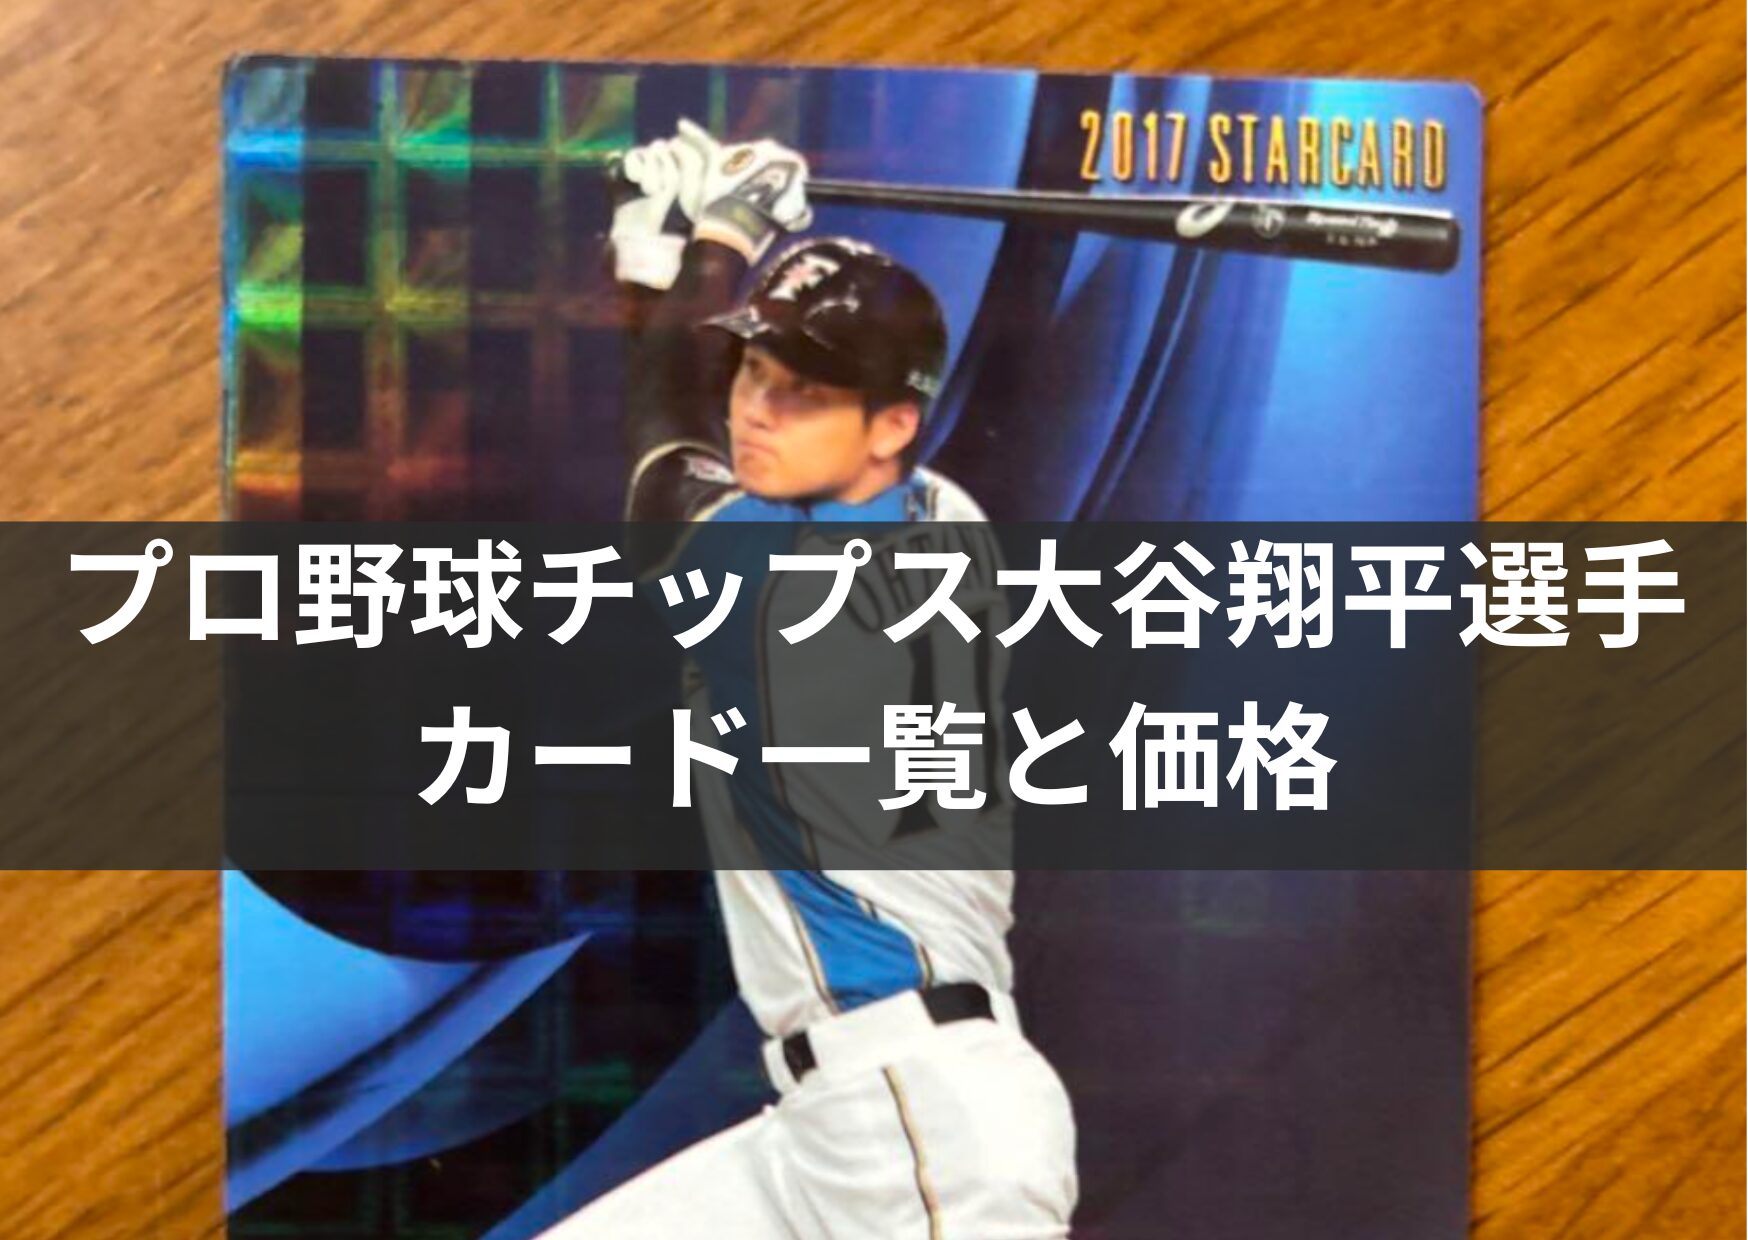 プロ野球チップス大谷翔平選手カード一覧と価格